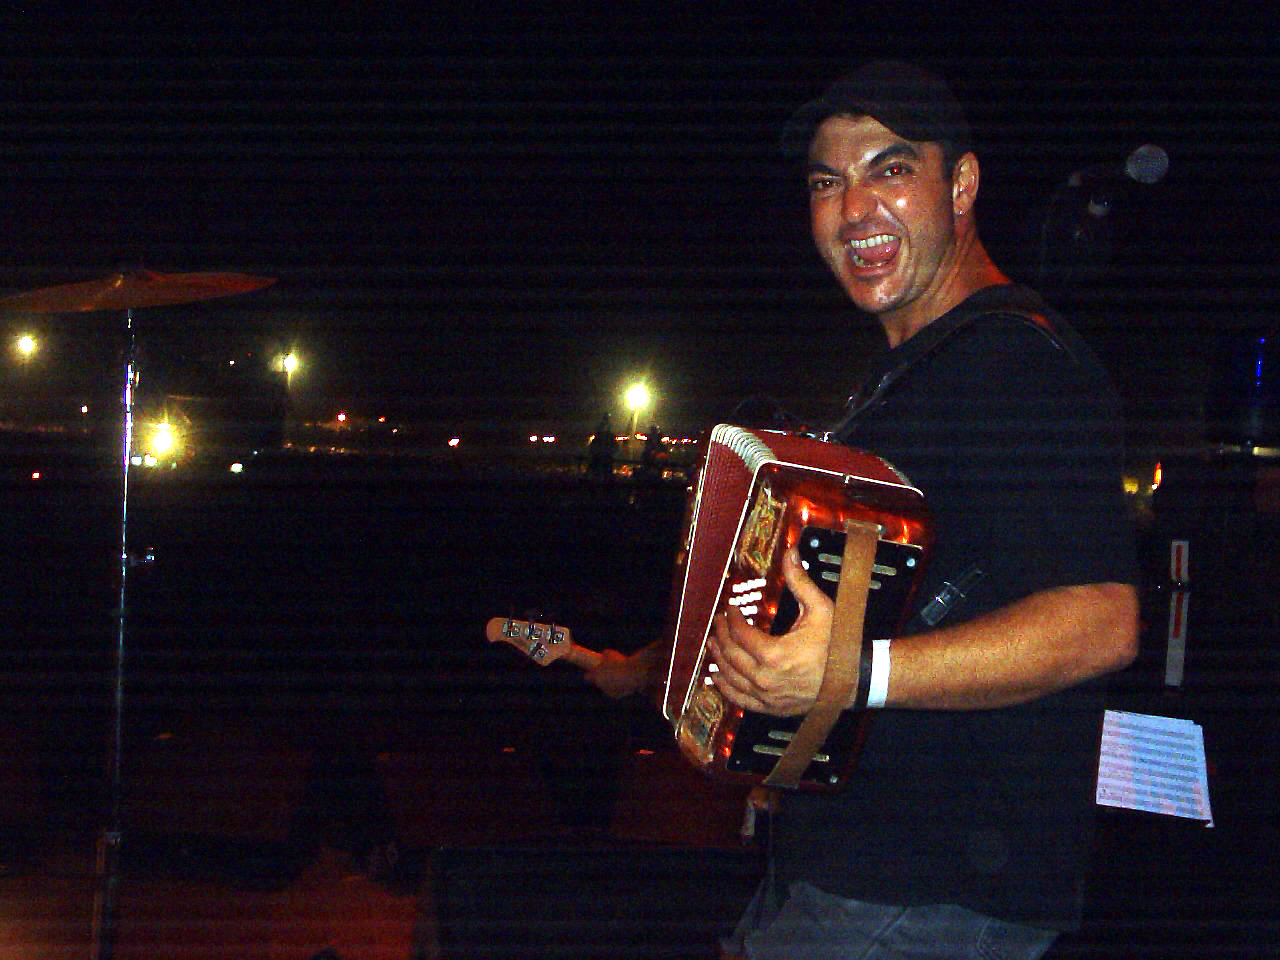 Pere Enguix 'Petete', durant al gira que va fer amb Manu Chao l'any 2003 / Foto: trombon.wordpress.com